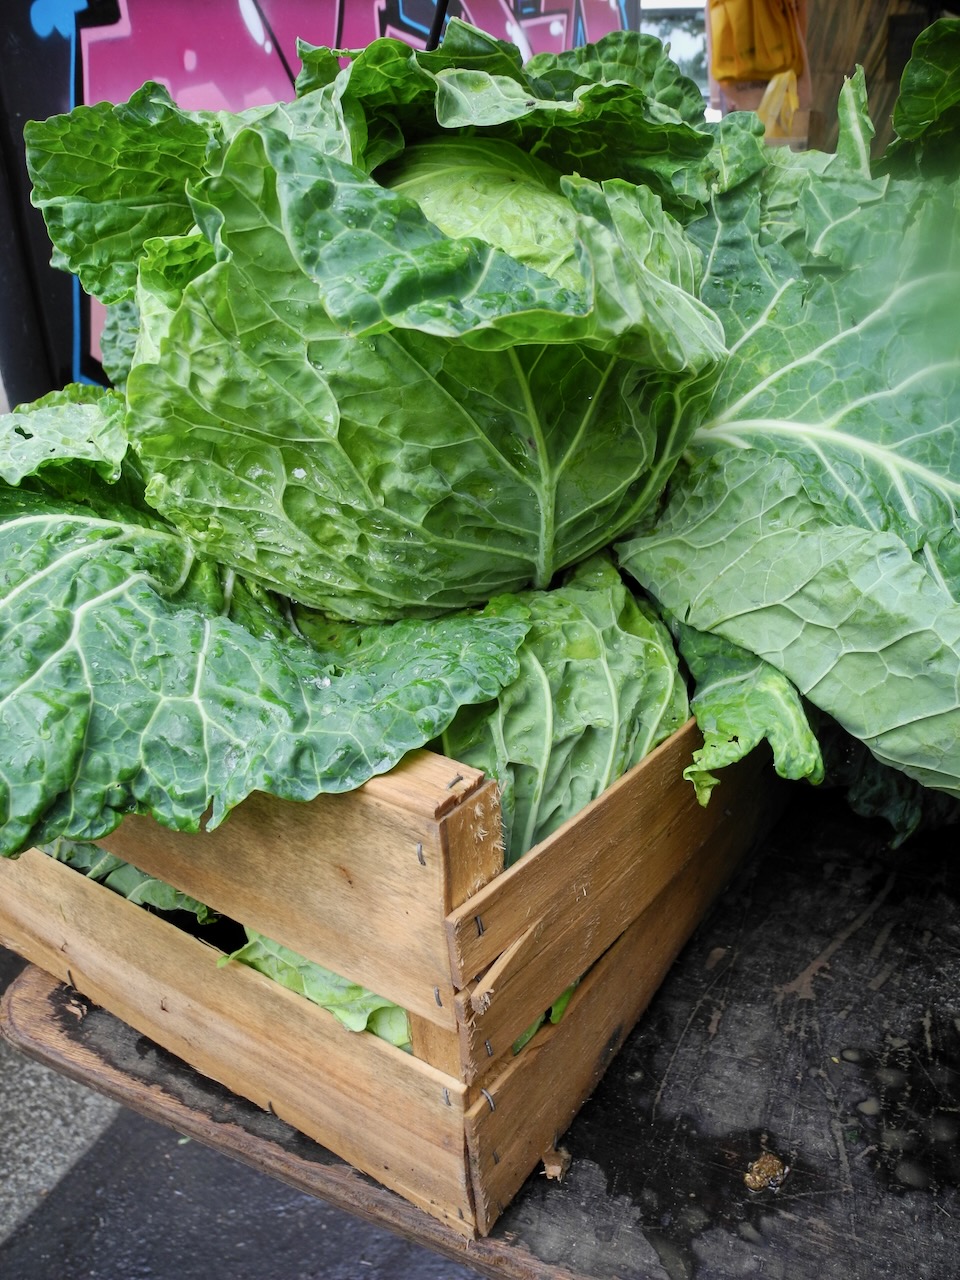 A Cabbage for Sale at a Paris Market